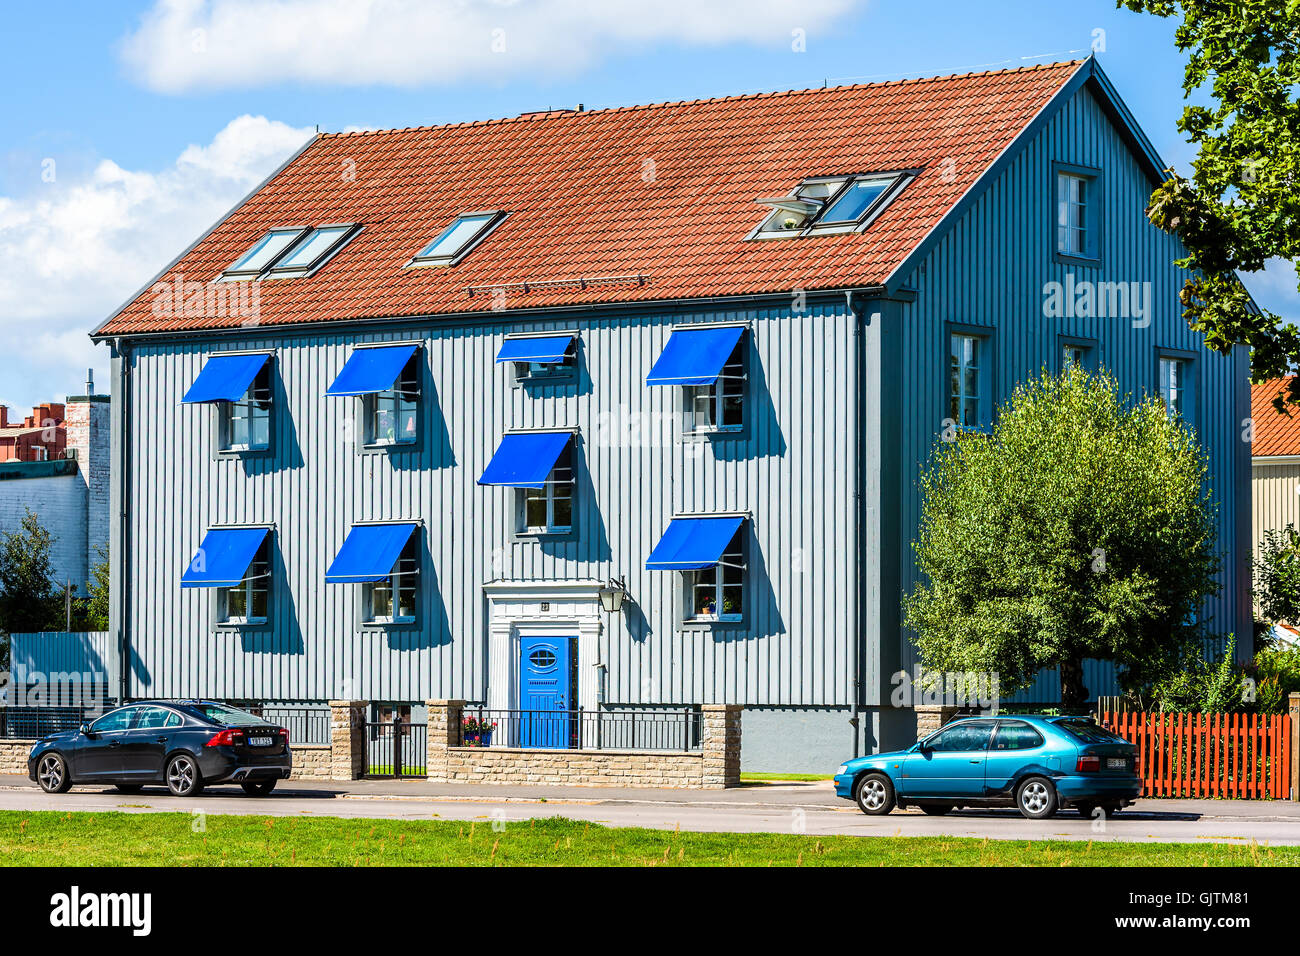 Kalmar, Svezia - Agosto 10, 2016: grigio casa con porta blu e tende. Due auto parcheggiata di fronte alla casa. Foto Stock